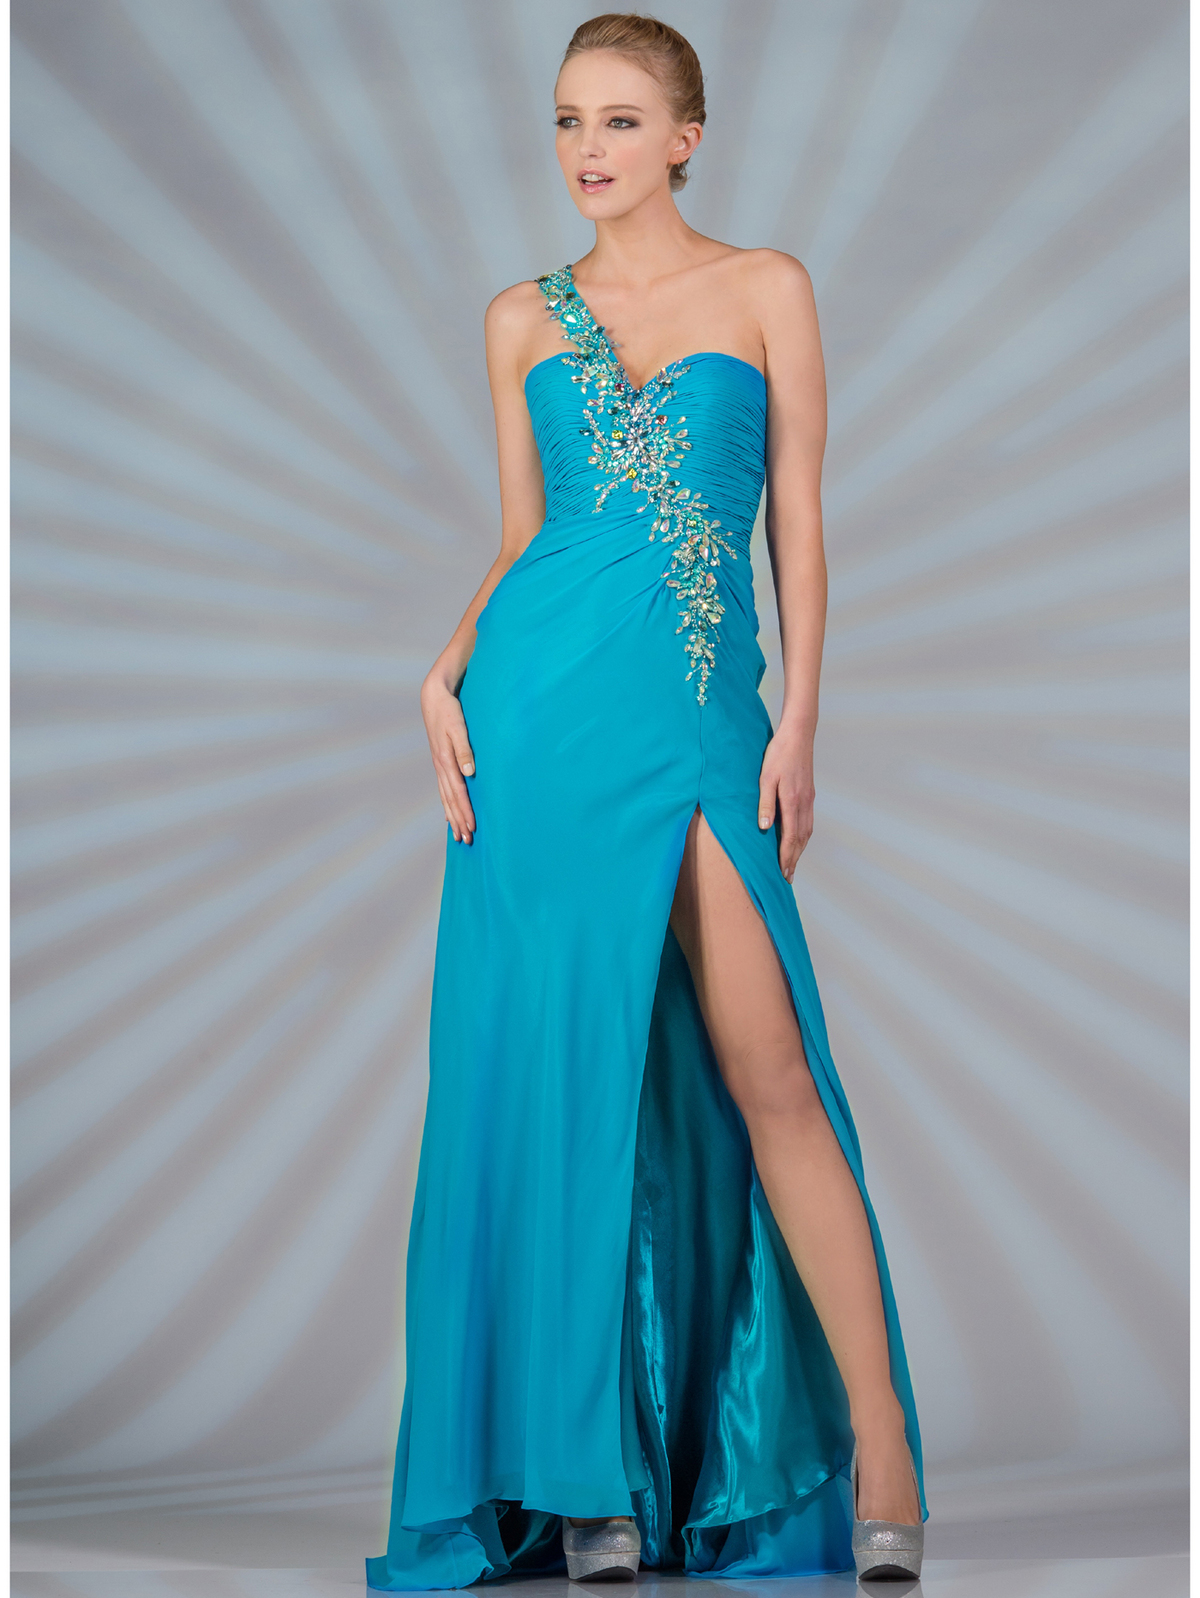 Blue Mermaid Prom Dresses 2014